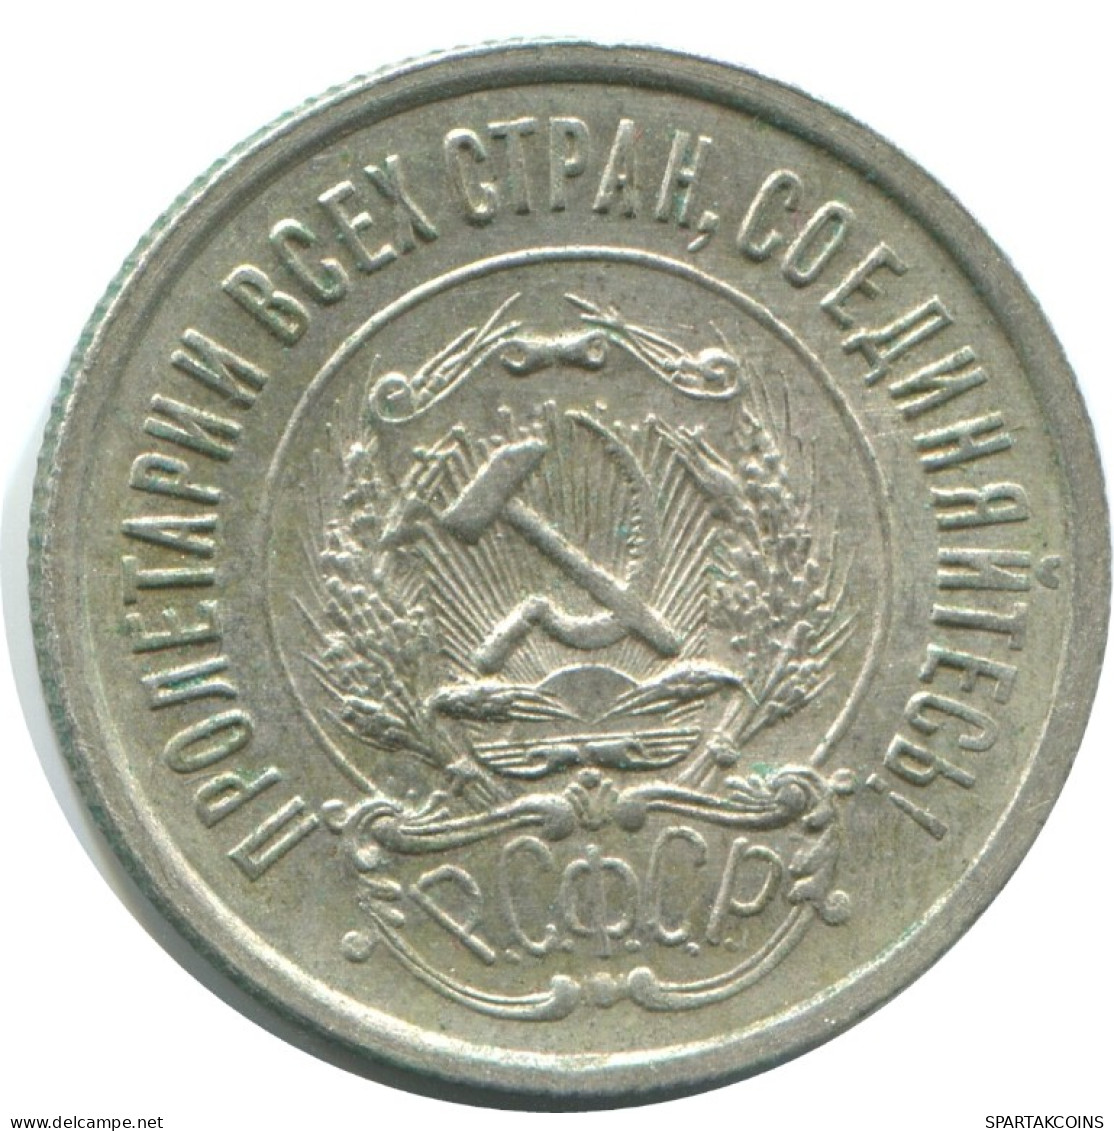 20 KOPEKS 1923 RUSIA RUSSIA RSFSR PLATA Moneda HIGH GRADE #AF579.4.E.A - Russland